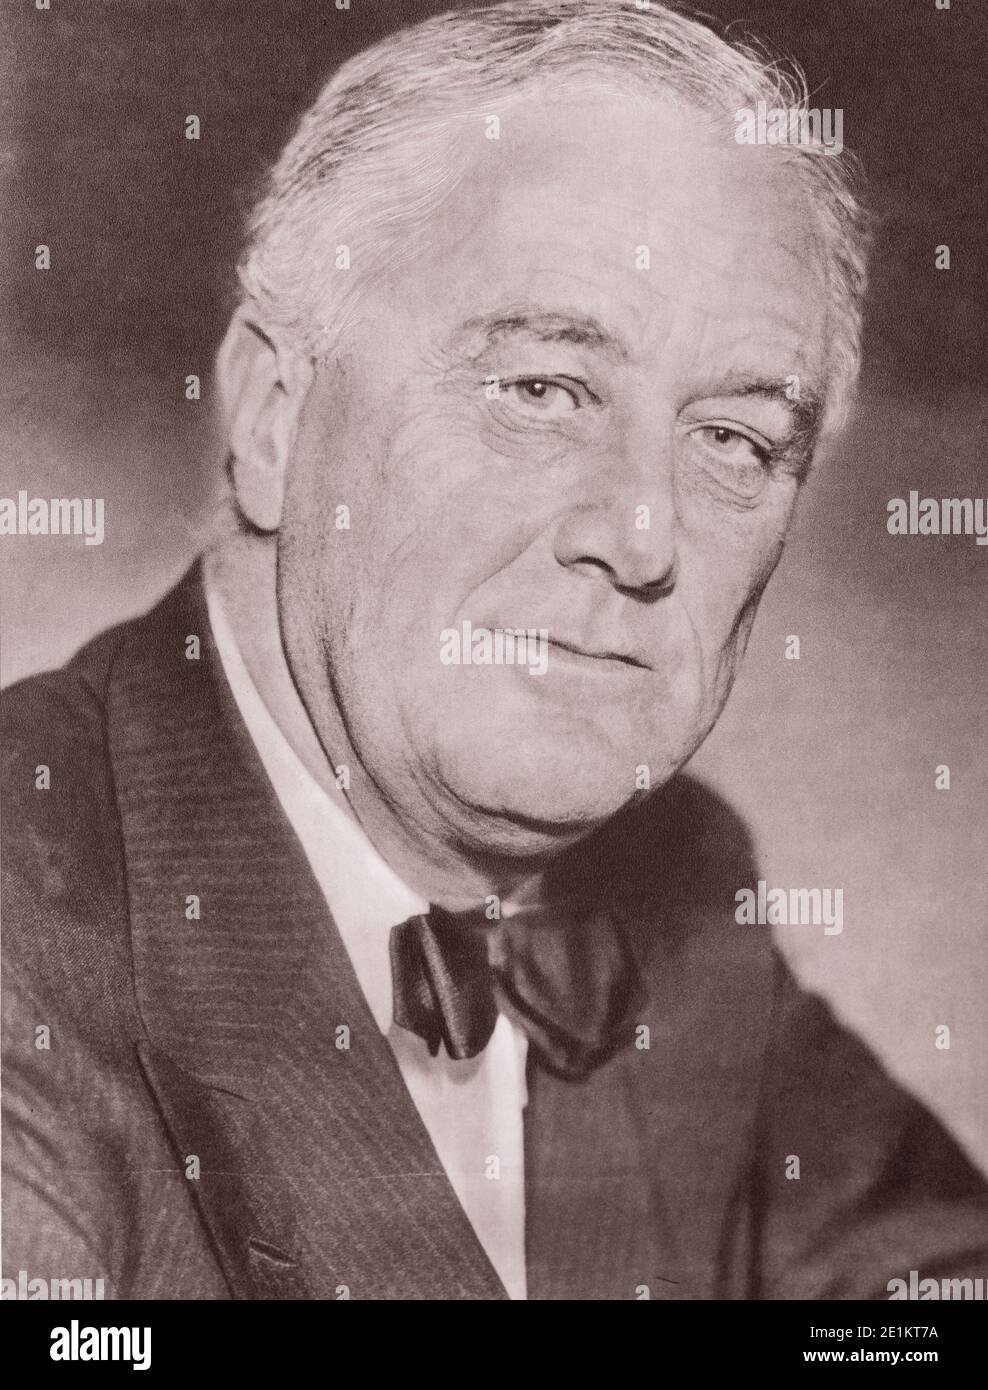 Portrait de Franklin Delano Roosevelt (1882 - 1945) était un homme d'État américain et leader politique qui a été le 32e président des Stat Banque D'Images